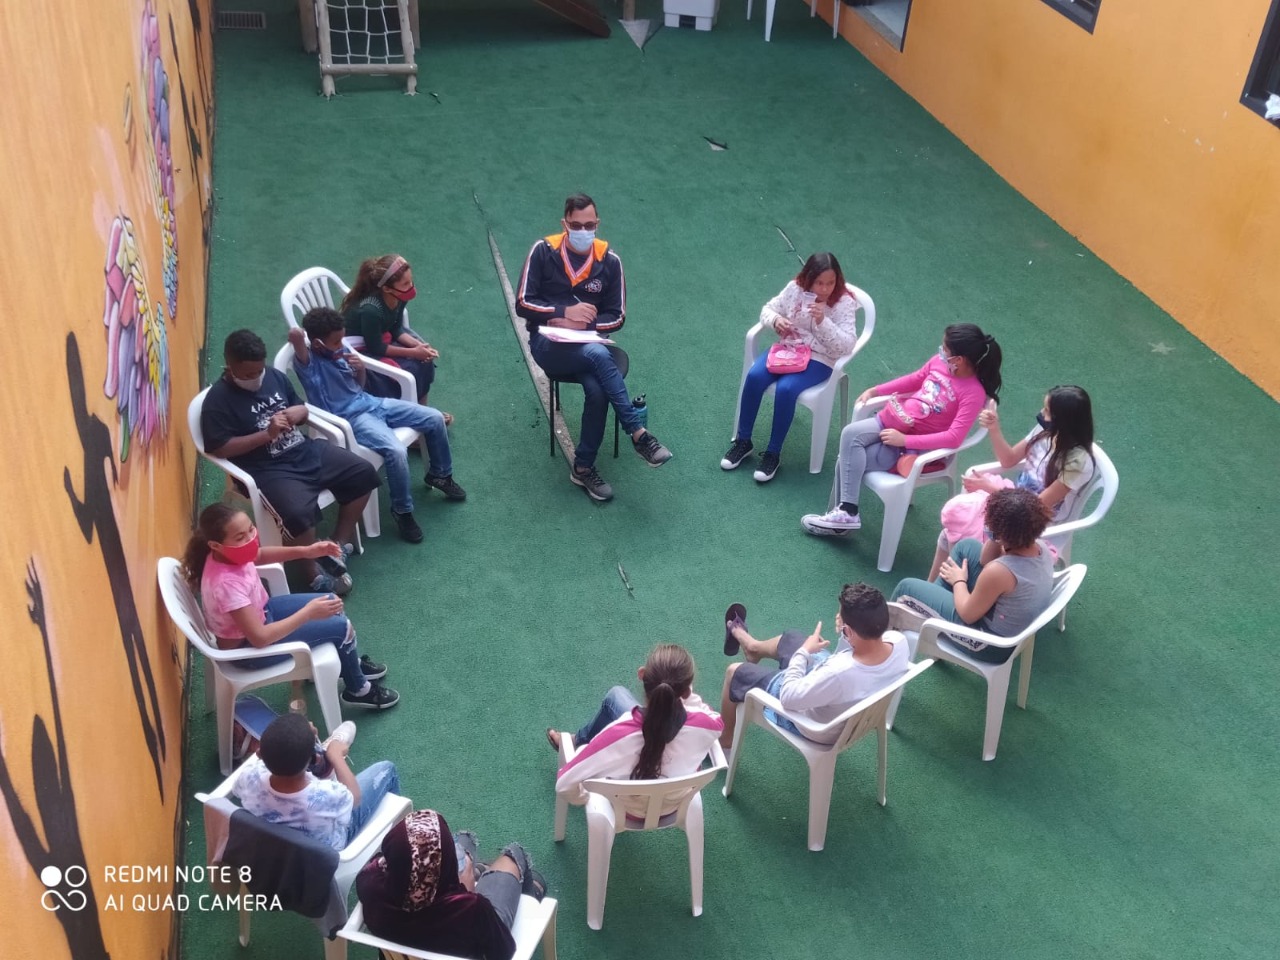 13 crianças e adolescentes de máscara sentadas em roda conversando em um ambiente aberto com paredes amarelas e chão verde. 